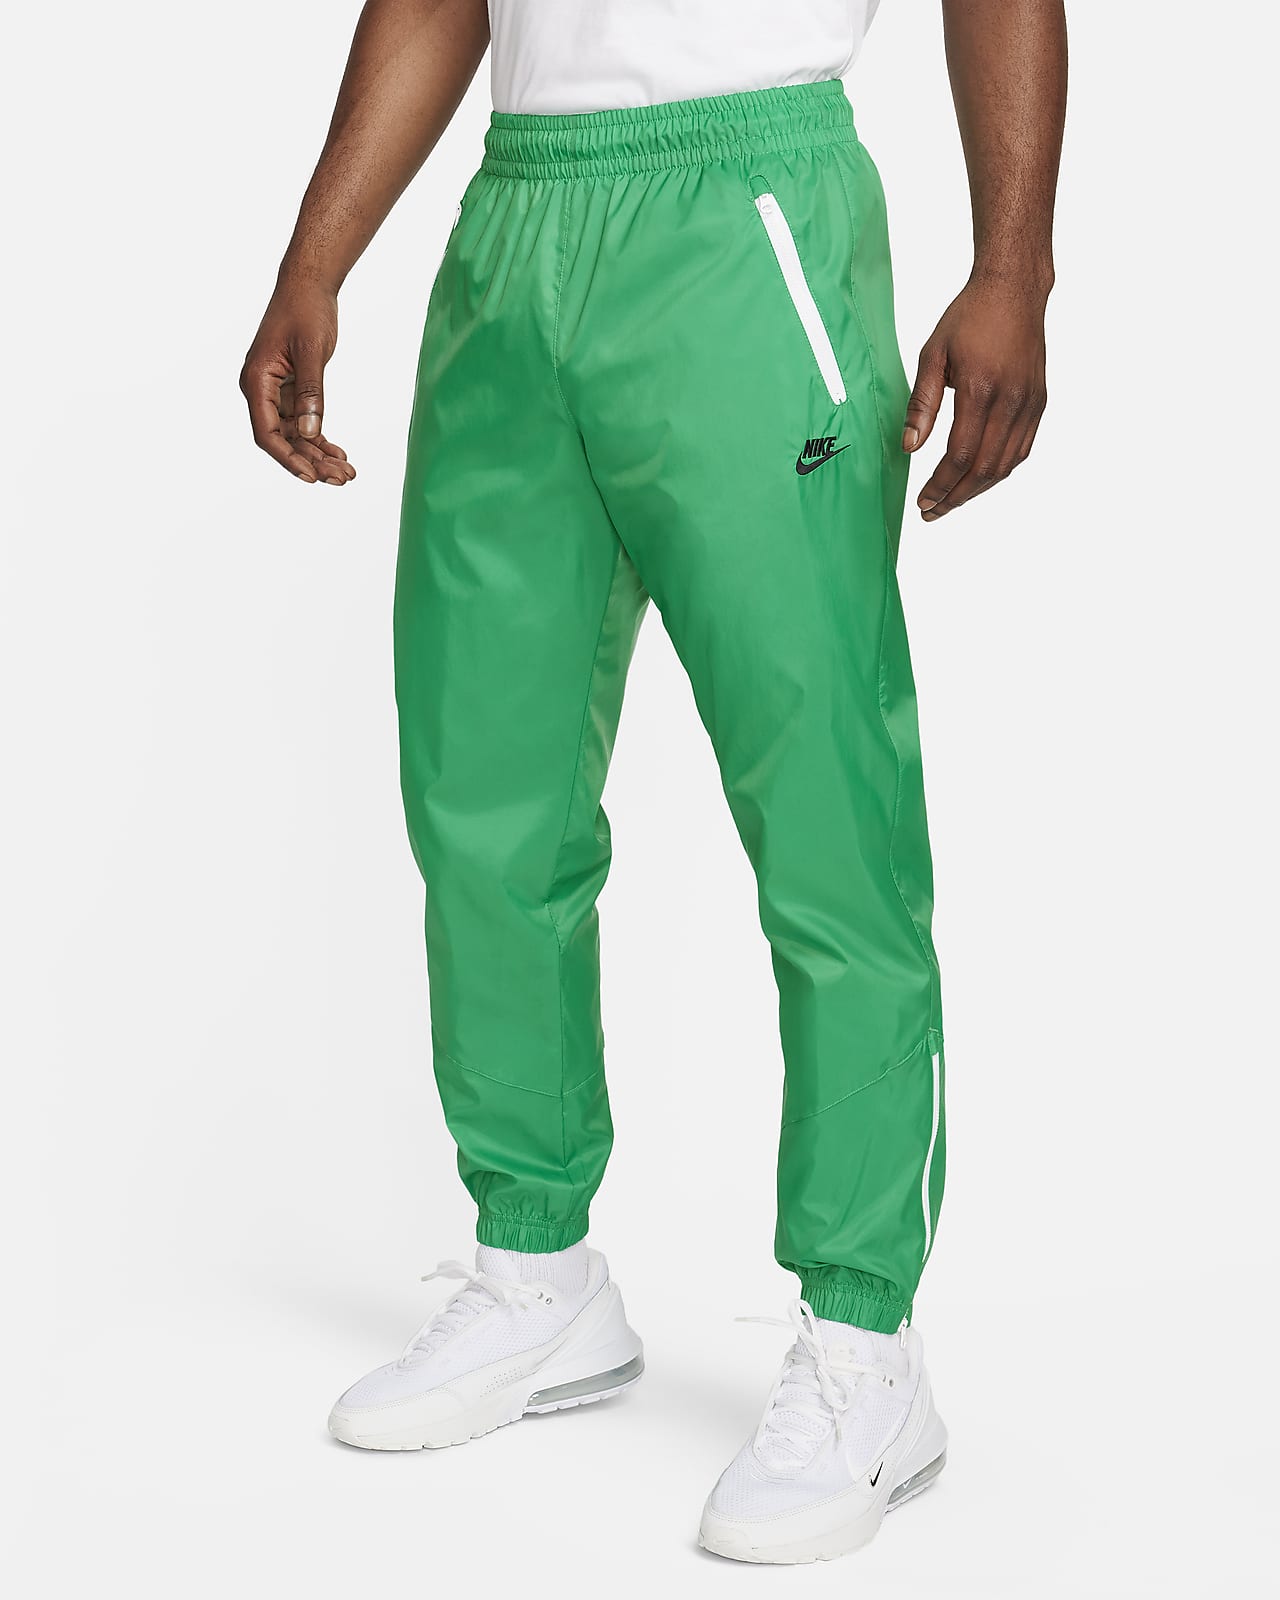 Pantalon doublé en tissu tissé Nike Windrunner pour homme